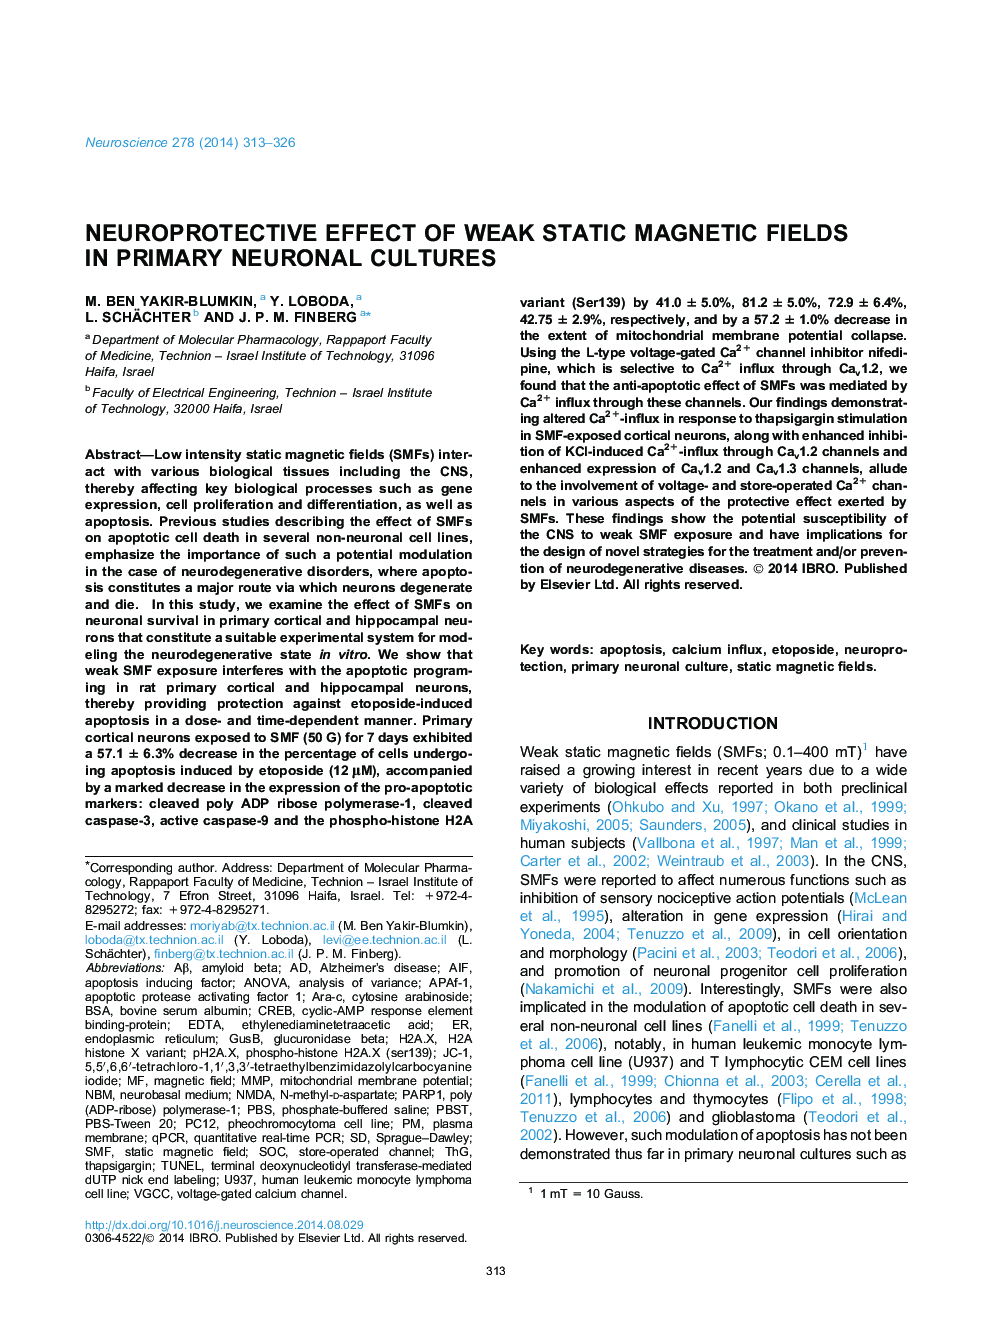 اثر نوروپاتیک از میدان مغناطیسی ضعیف استاتیکی در فرهنگ های اولیه نورونی 